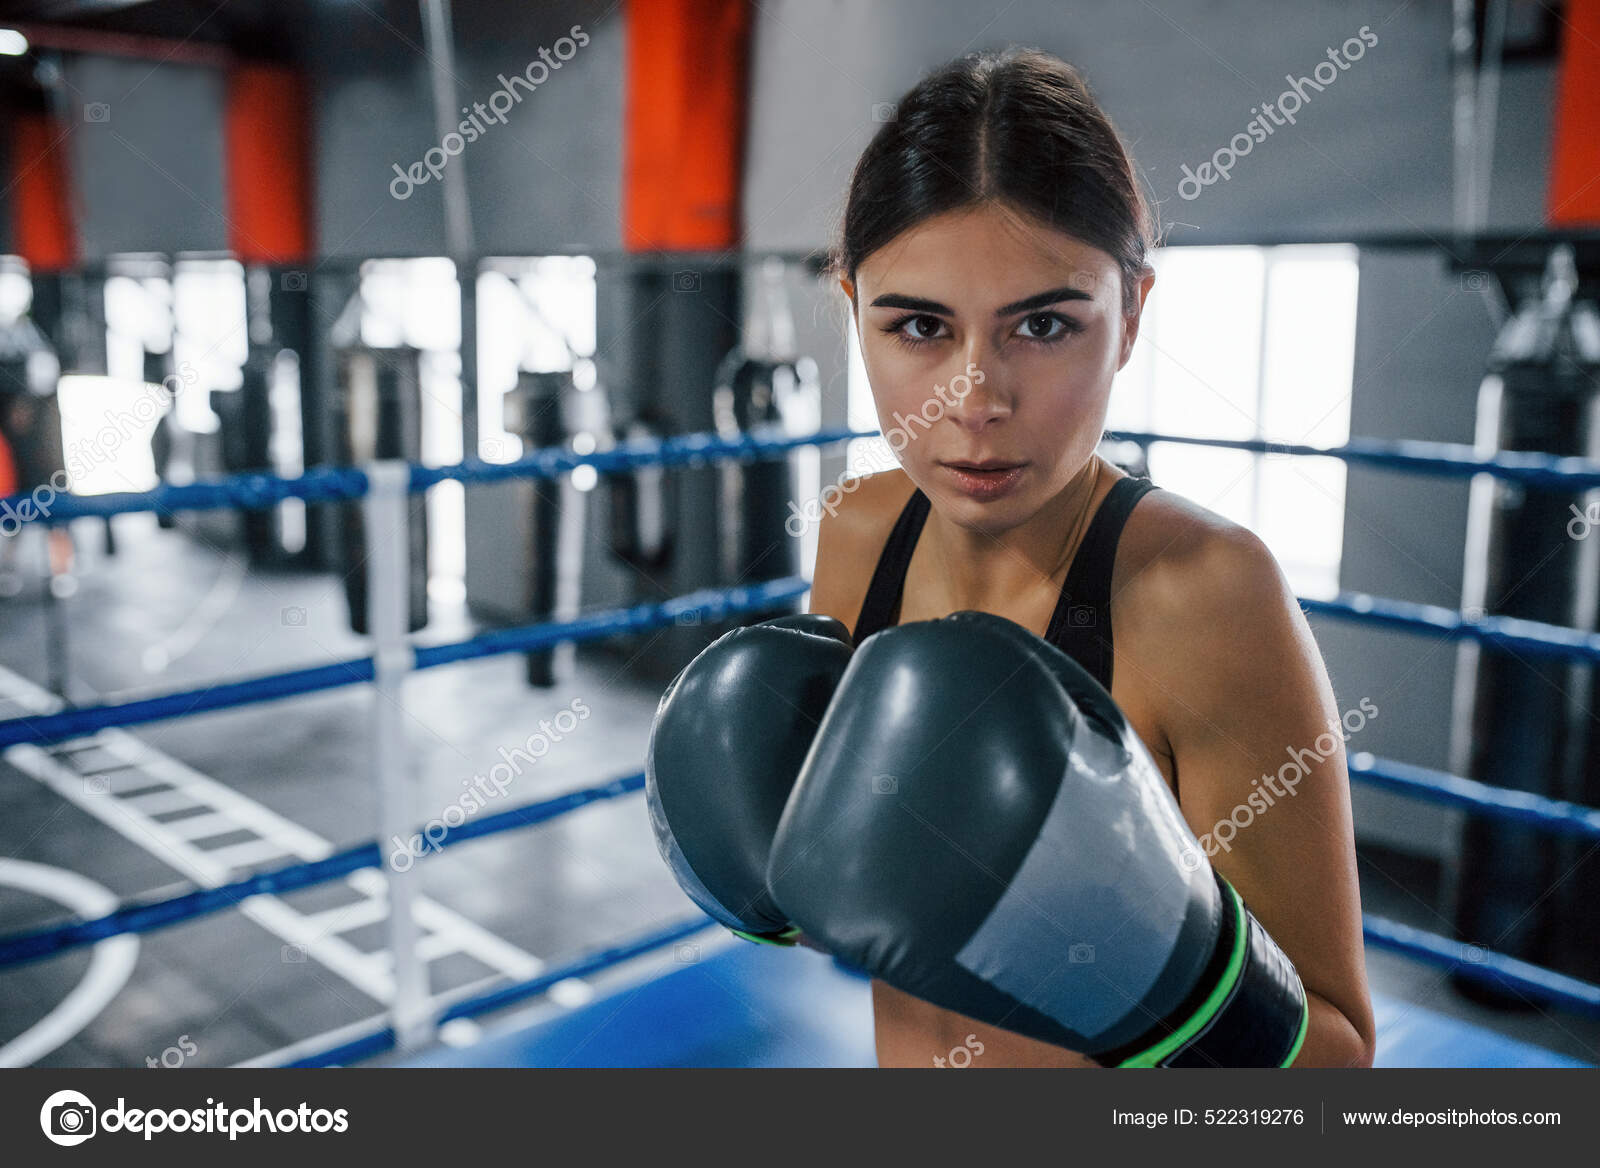 Serafín Depender de Fábula Mujer Joven Ropa Deportiva Está Ring Boxeo Teniendo Día Ejercicio:  fotografía de stock © myronstandret #522319276 | Depositphotos